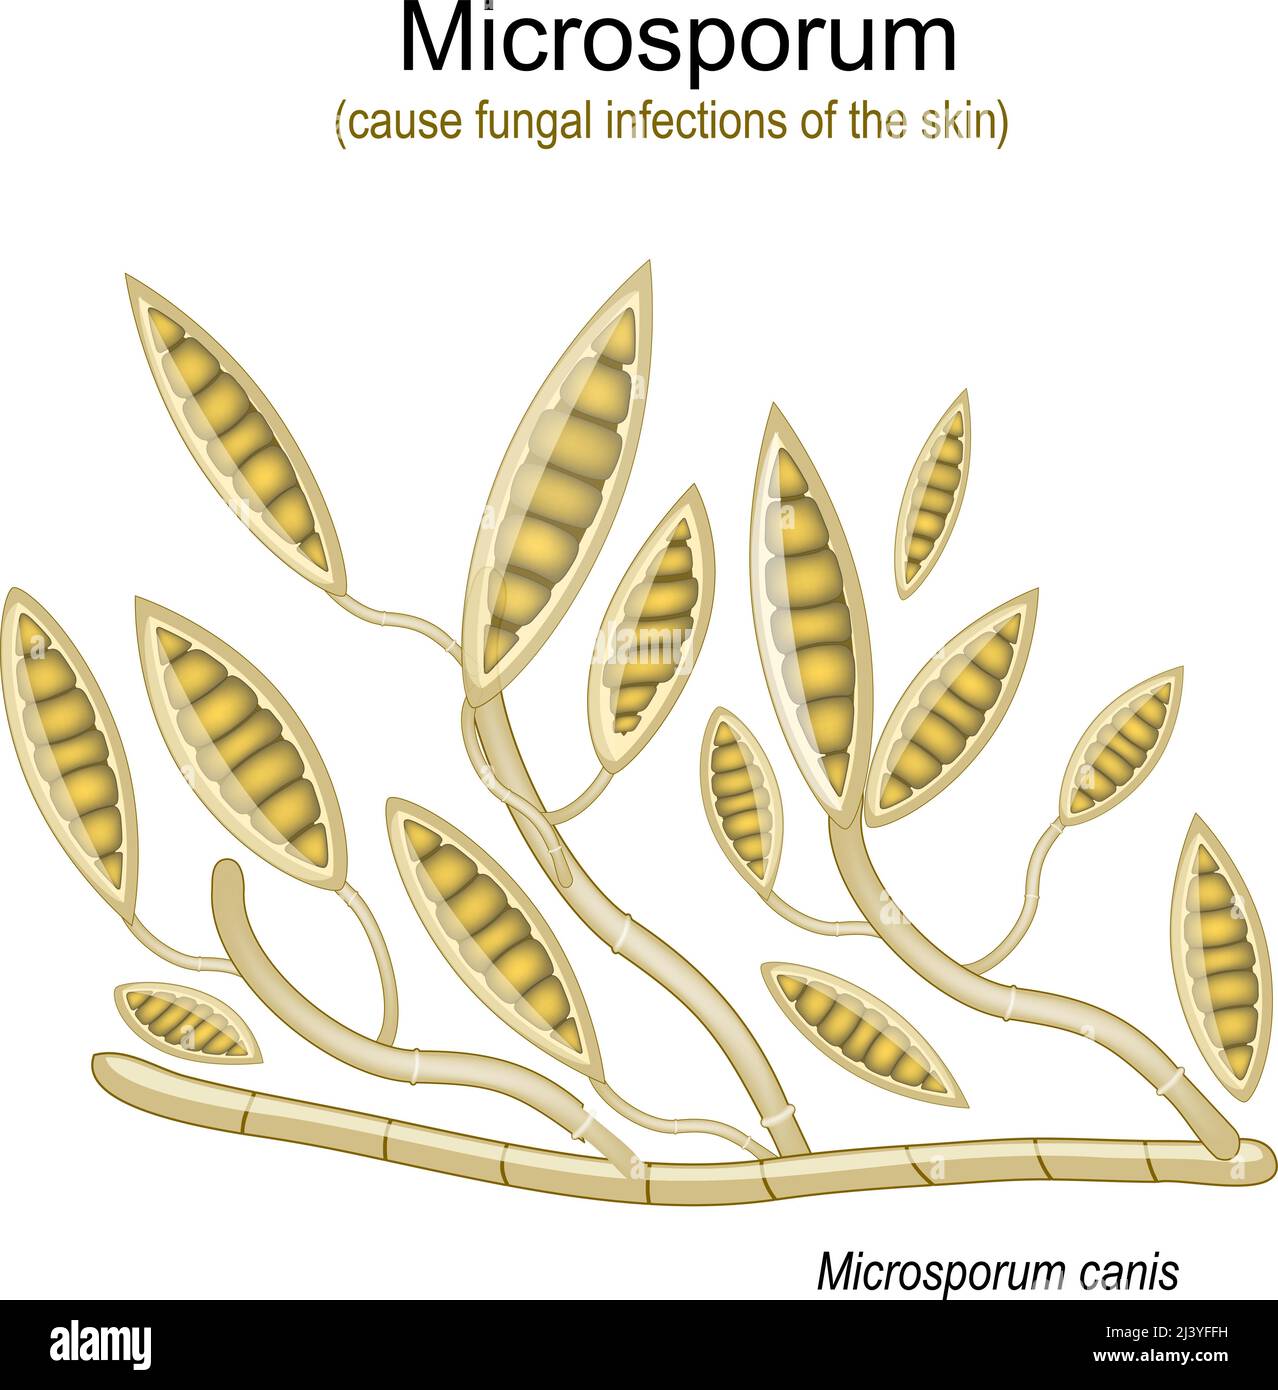 Microsporum, sous microscope. Champignons microscopiques qui causent des infections du cuir chevelu, de la peau du corps et des pieds. Illustration vectorielle Illustration de Vecteur